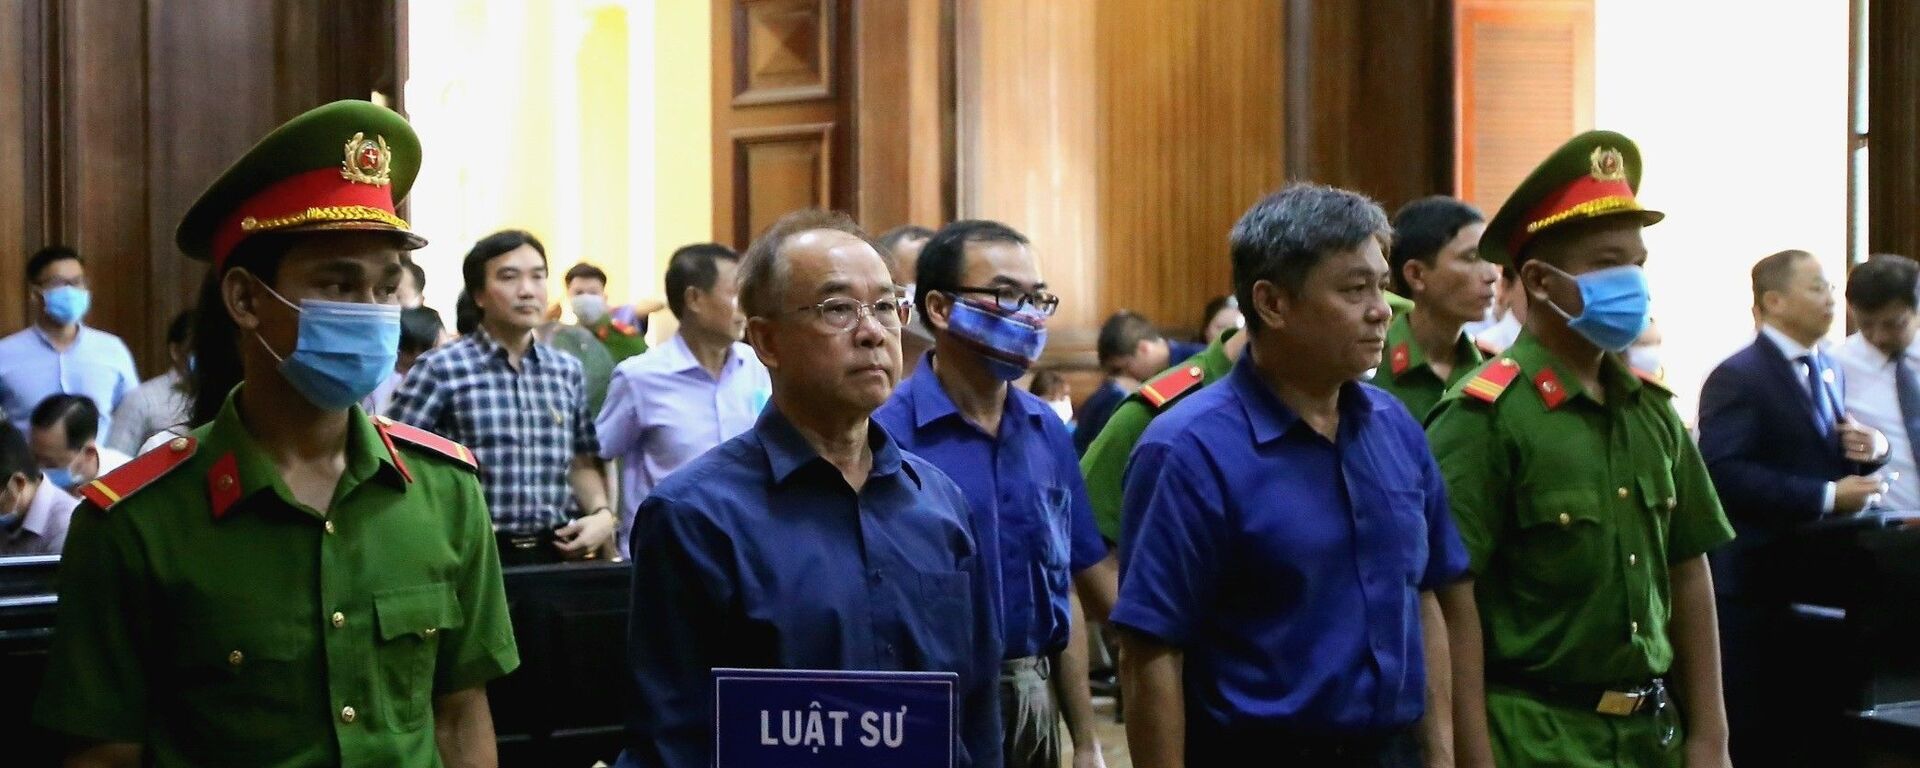 Các bị cáo Nguyễn Thành Tài, Trương Văn Út, Đào Anh Kiệt (từ trái qua) tại phiên tòa ngày 17/9/2020. - Sputnik Việt Nam, 1920, 05.10.2020